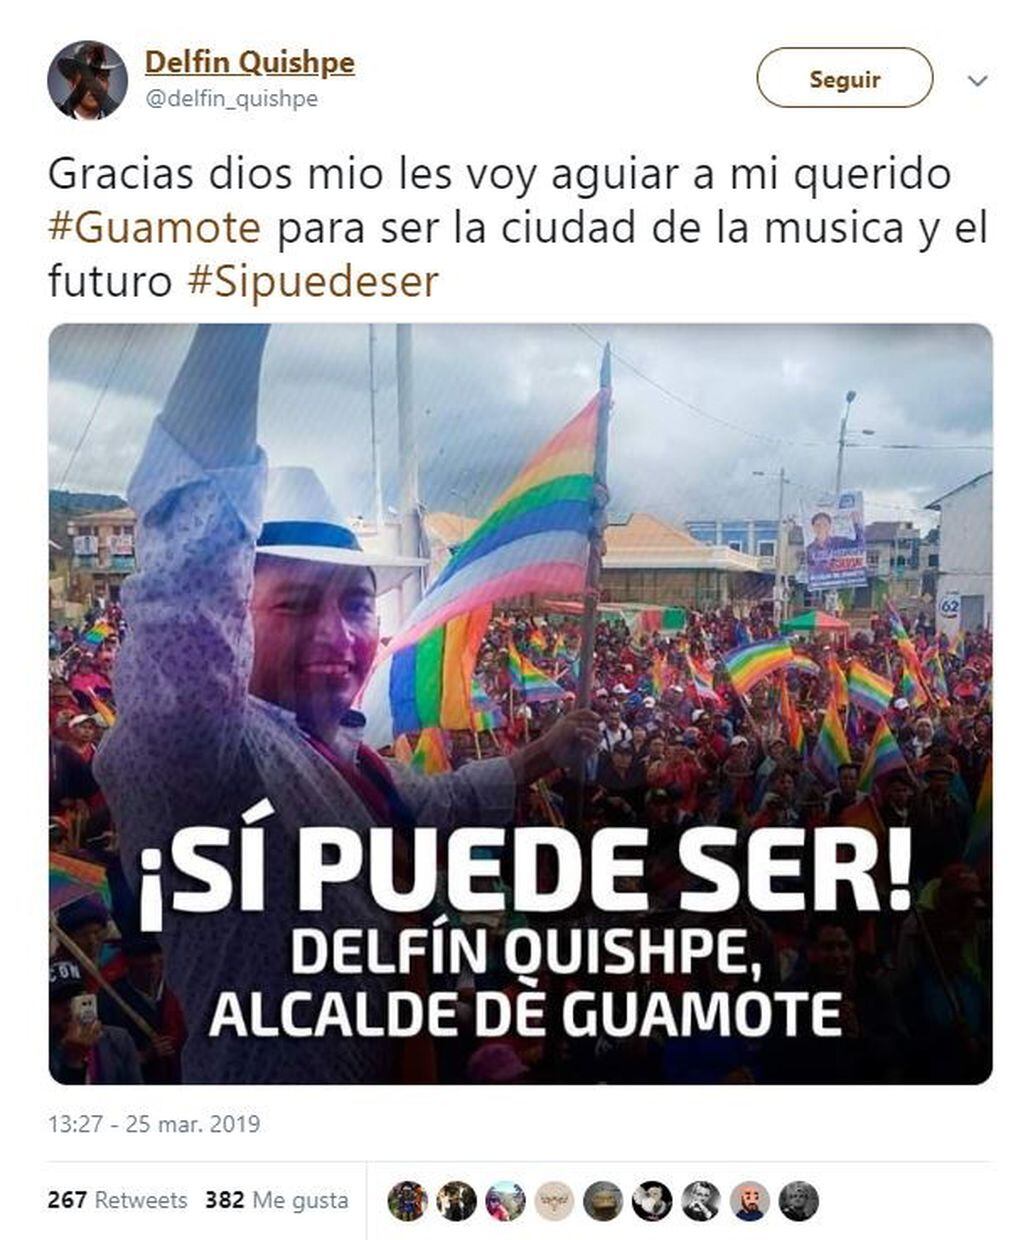 Delfin Quishpe (Twitter)